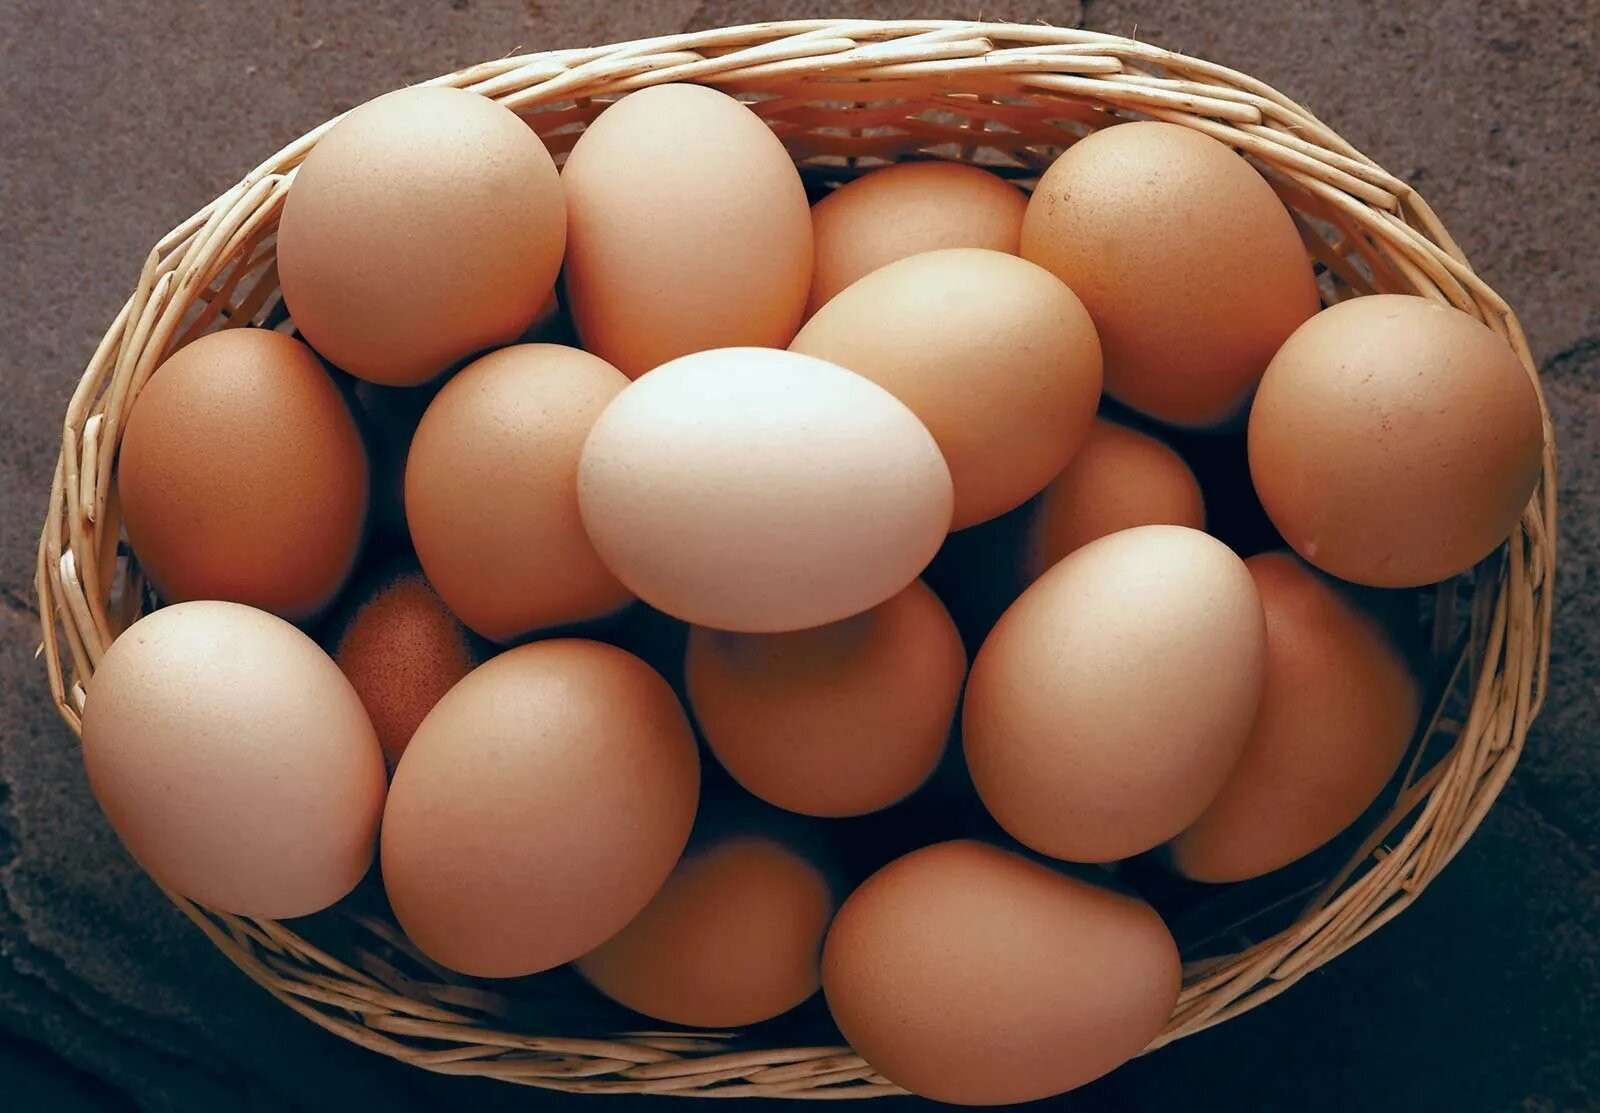 Trứng là loại thực phẩm không nên bảo quản trong ngăn đông. (Ảnh: britannica)